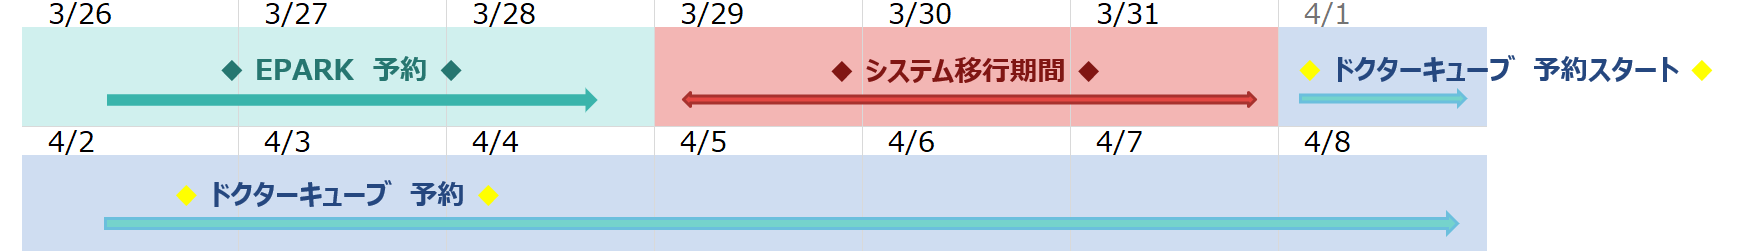 予約システム変更カレンダー｜下山記念クリニック(東広島市)